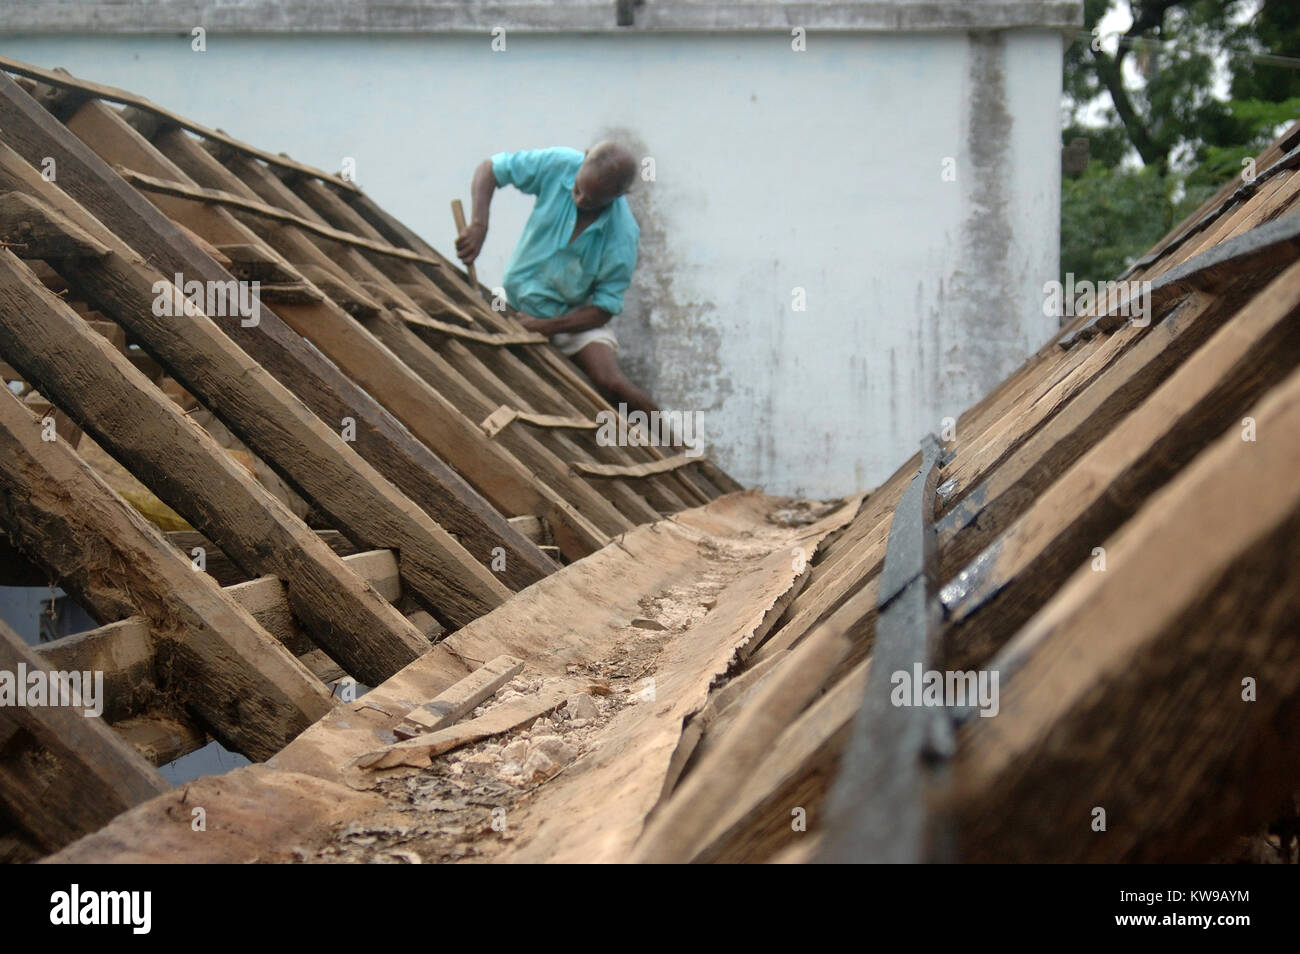 Tischler Arbeiten auf dem Dach der Schule, Tamil Nadu, Südindien. Die Balken sind von Holz aus der Palmyra palm gemacht. Stockfoto